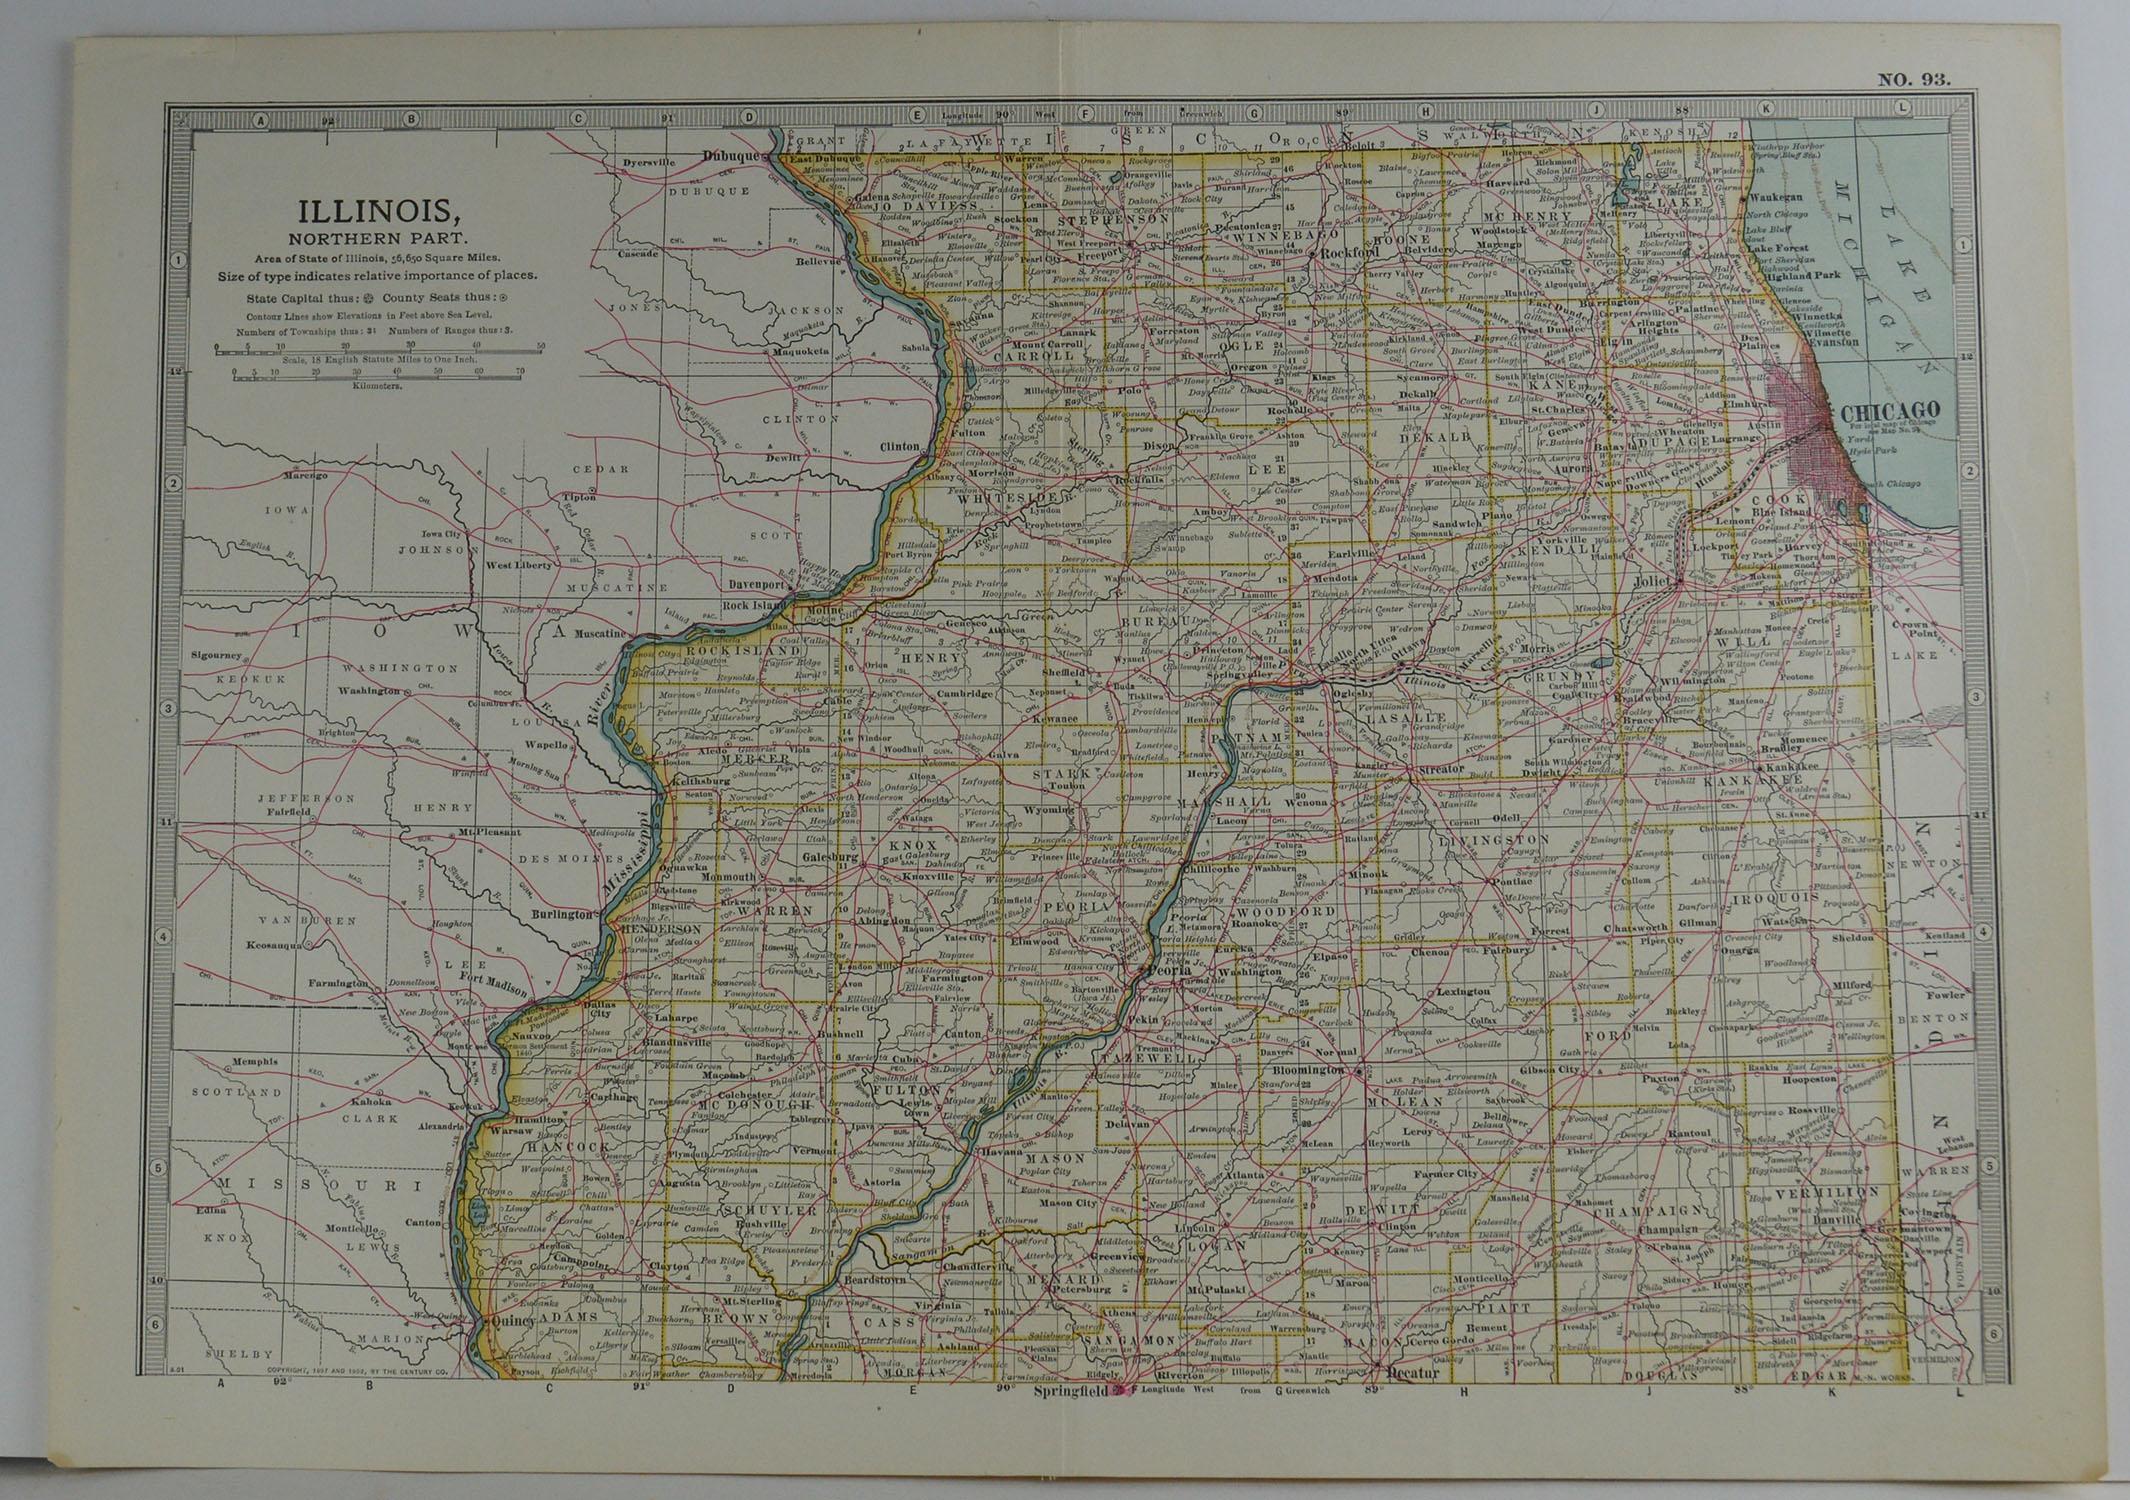 Other Original Antique Map of Illinois, circa 1890